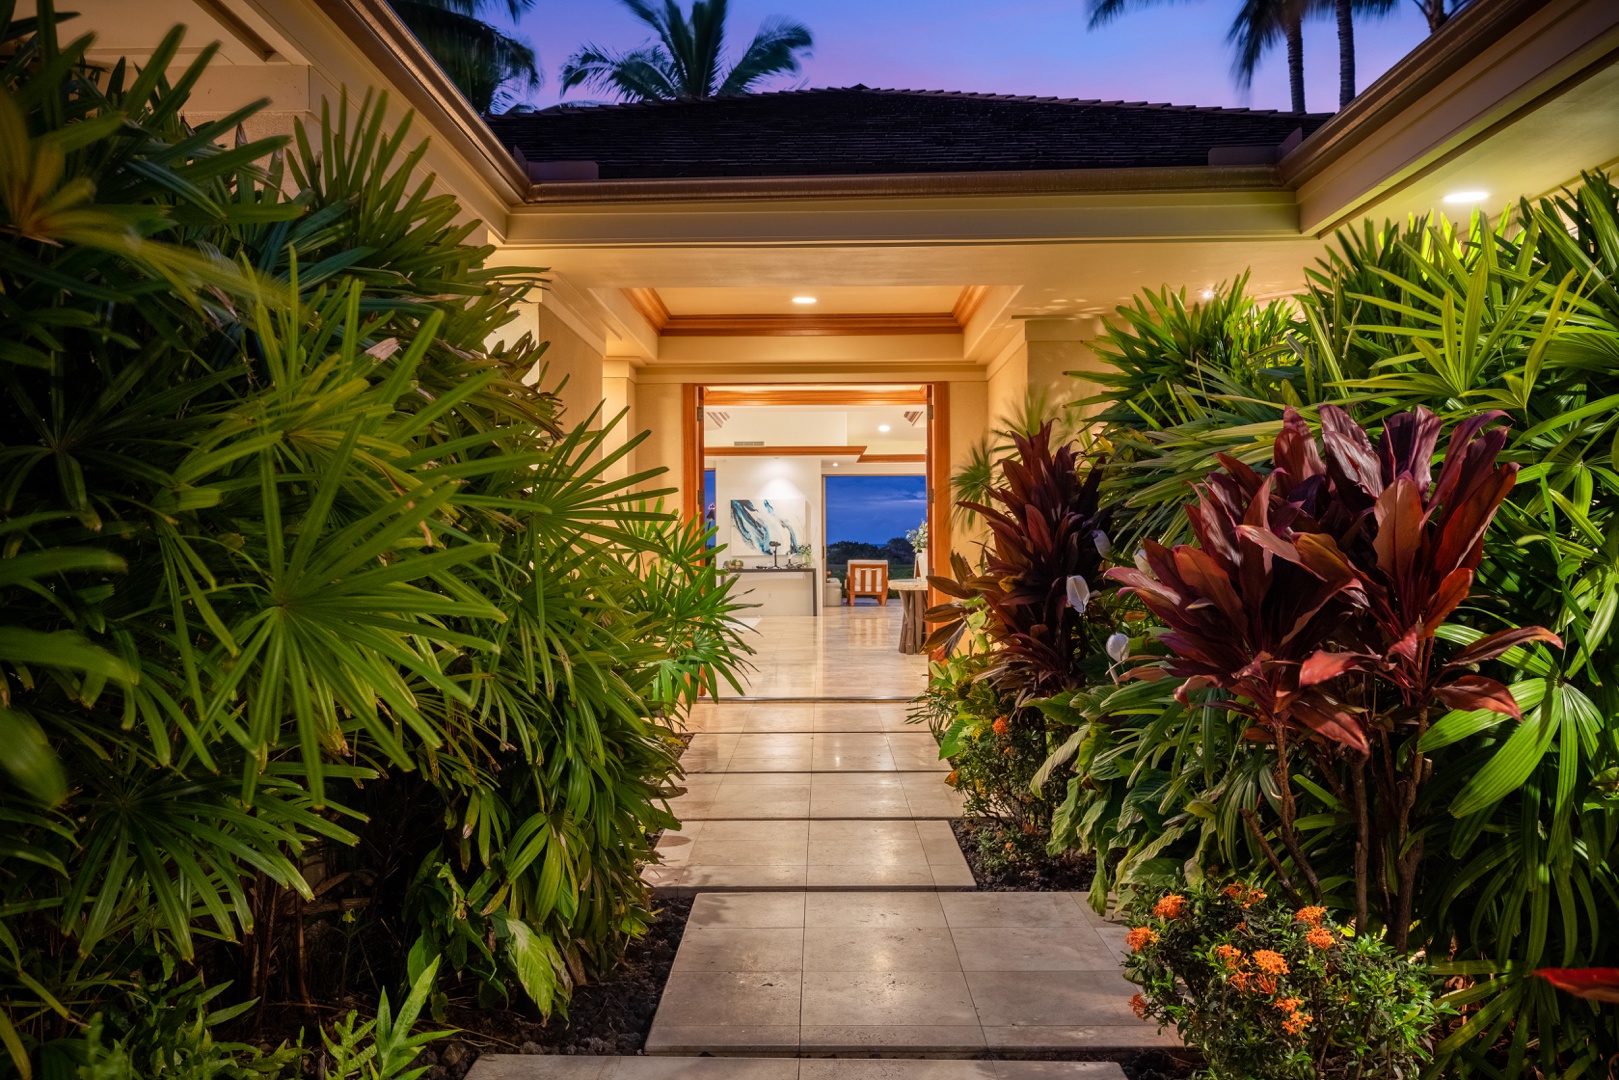 Kailua Kona Vacation Rentals, 4BD Pakui Street (147) Estate Home at Four Seasons Resort at Hualalai - Interior entrance walkway with lush tropical landscaping.